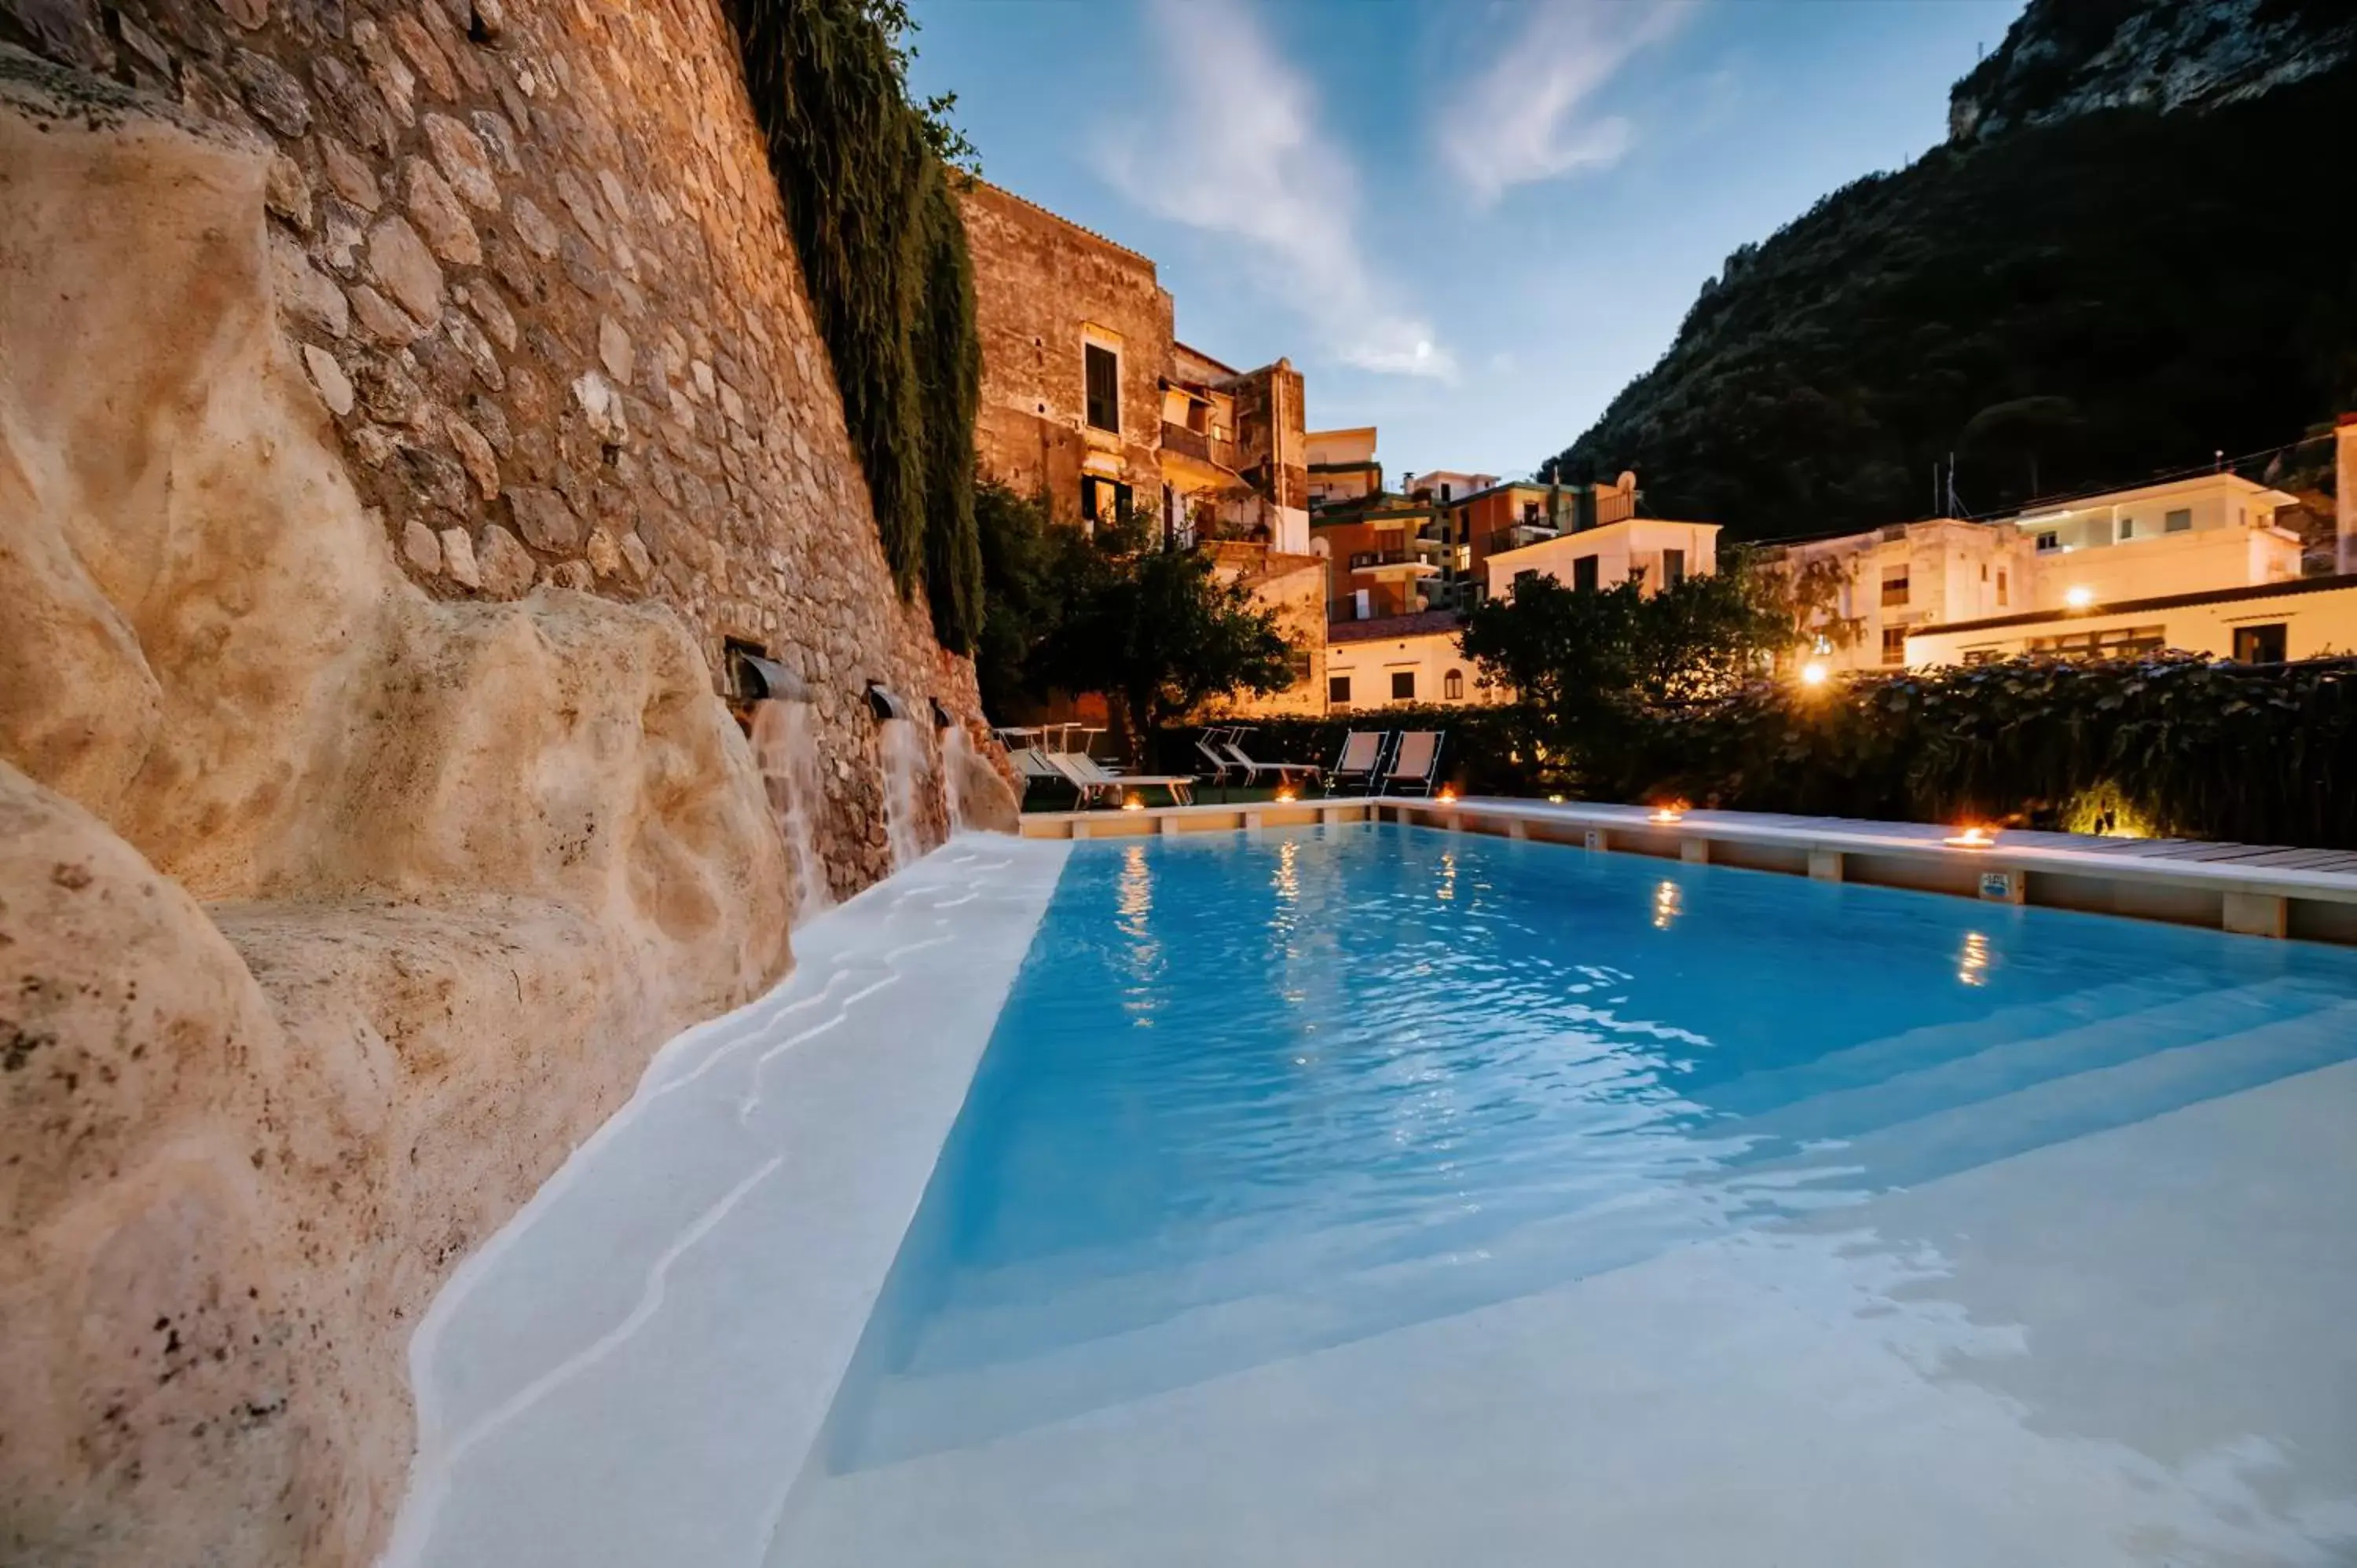 Swimming Pool in Amalfi Resort